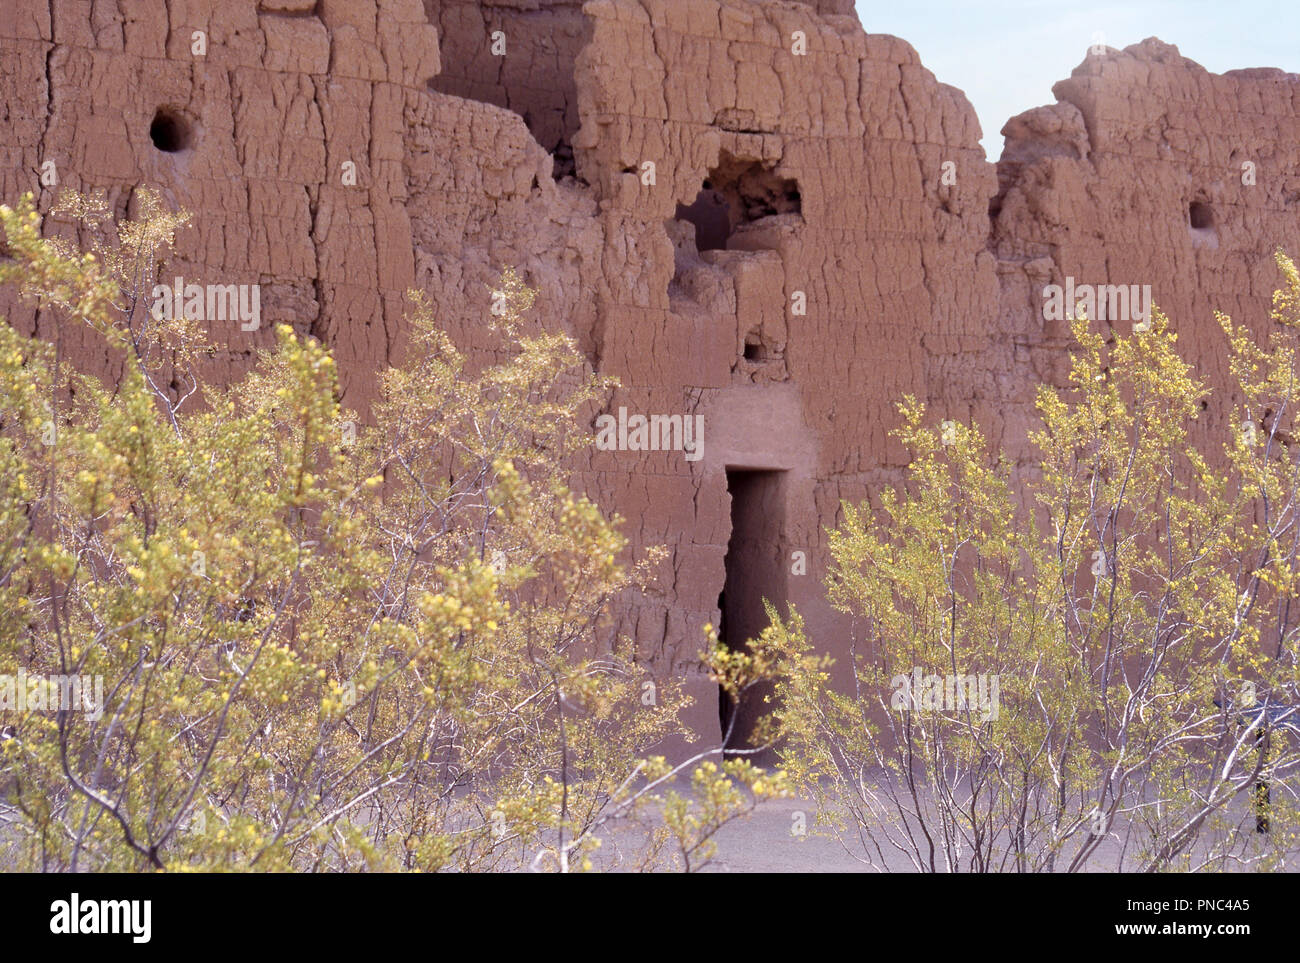 Hohokam ruines de Casa Grande, avec trous d'observatoire astronomique, l'Arizona. Photographie Banque D'Images